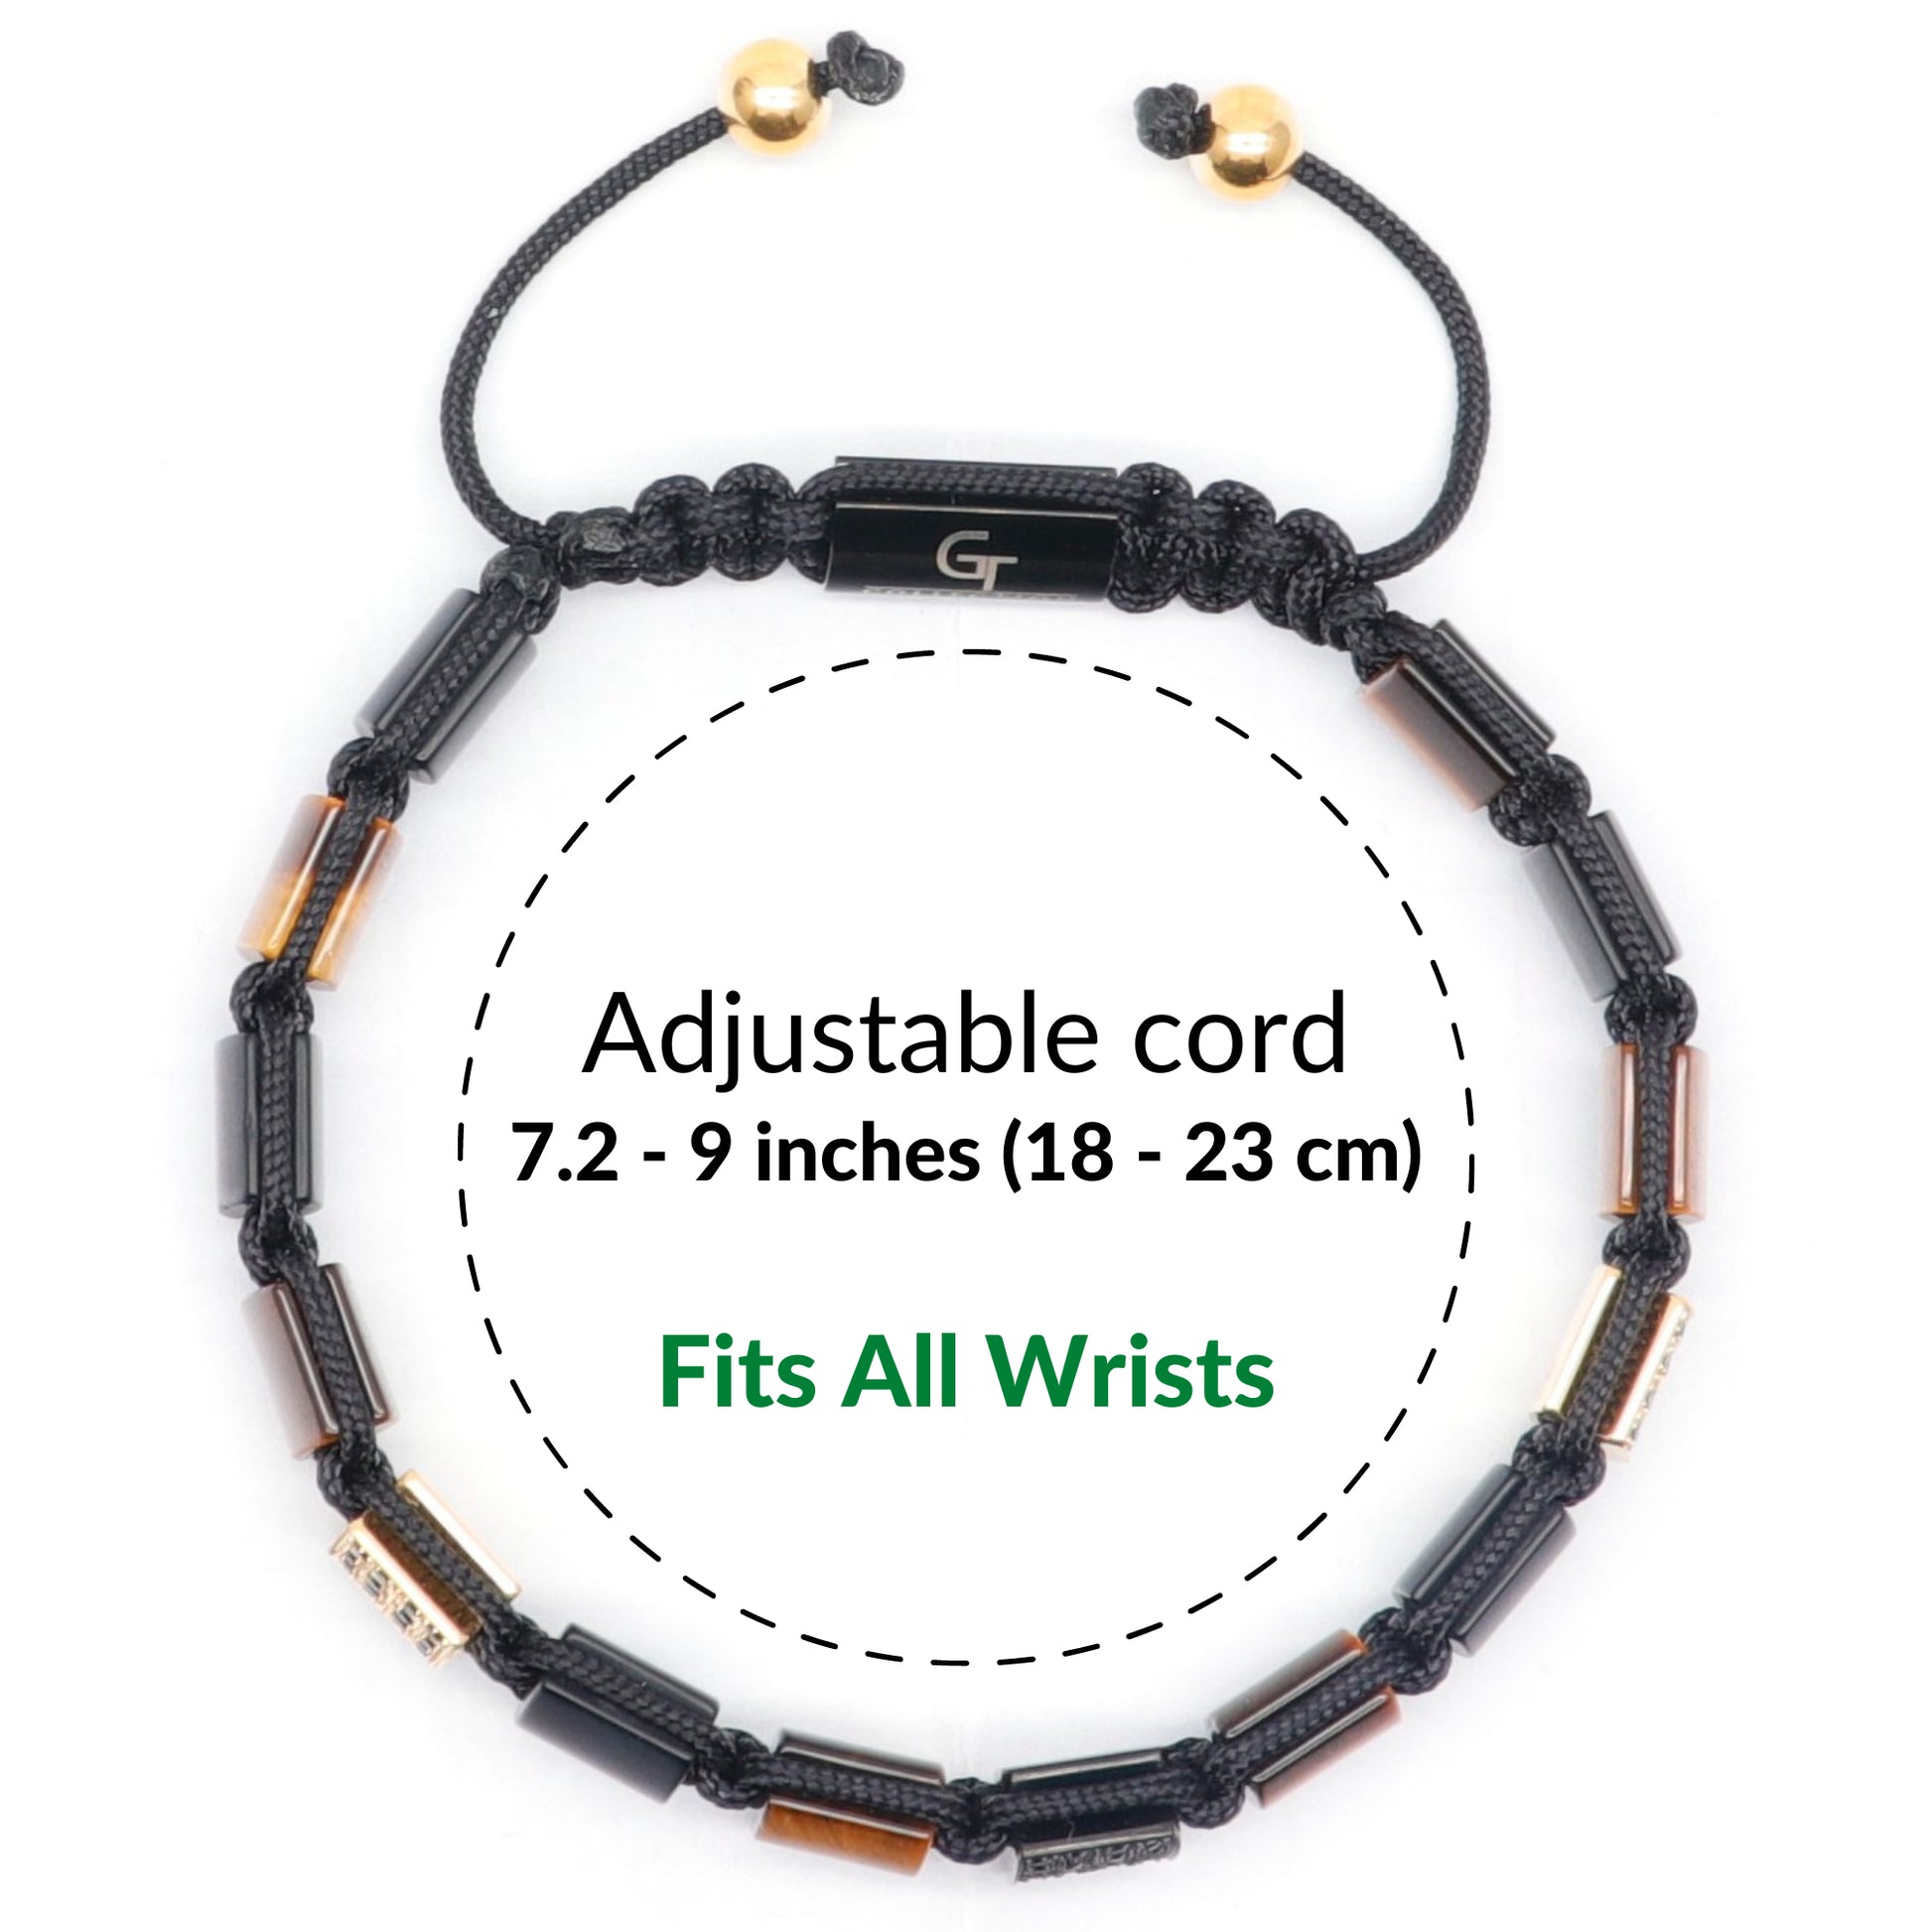 Black Onyx Beaded Bracelet for Men with Tiger Eye